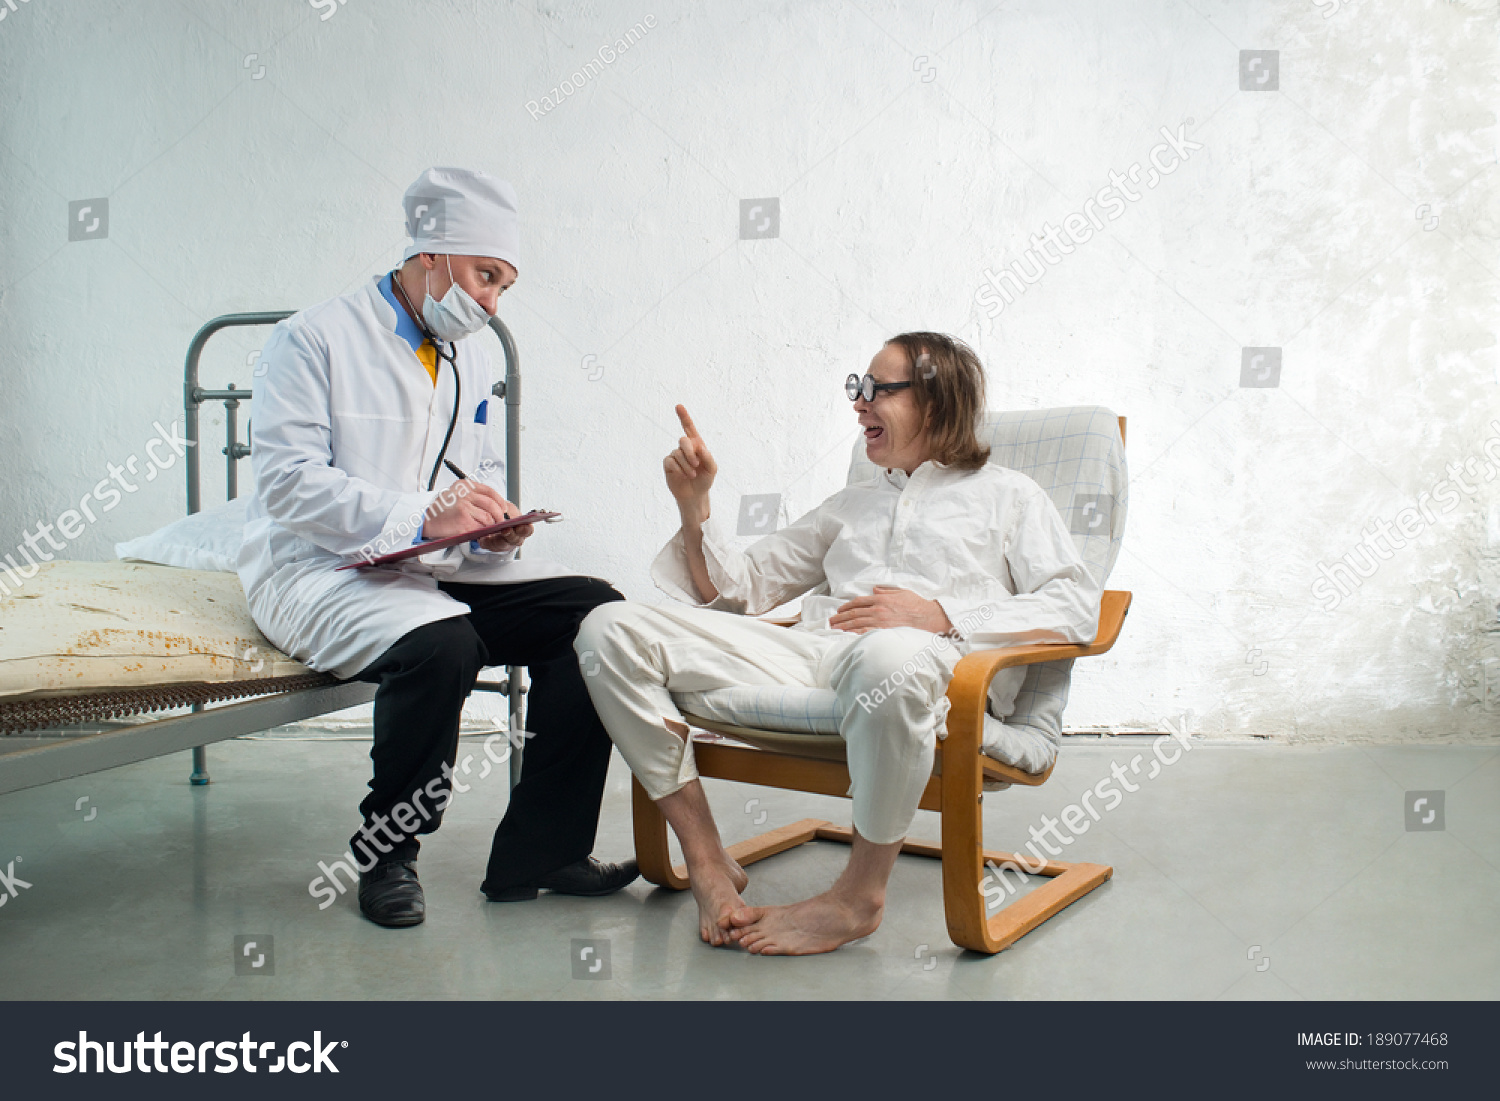 Старый доктор просит студентку снять нижнее белье и проводит полный осмотр